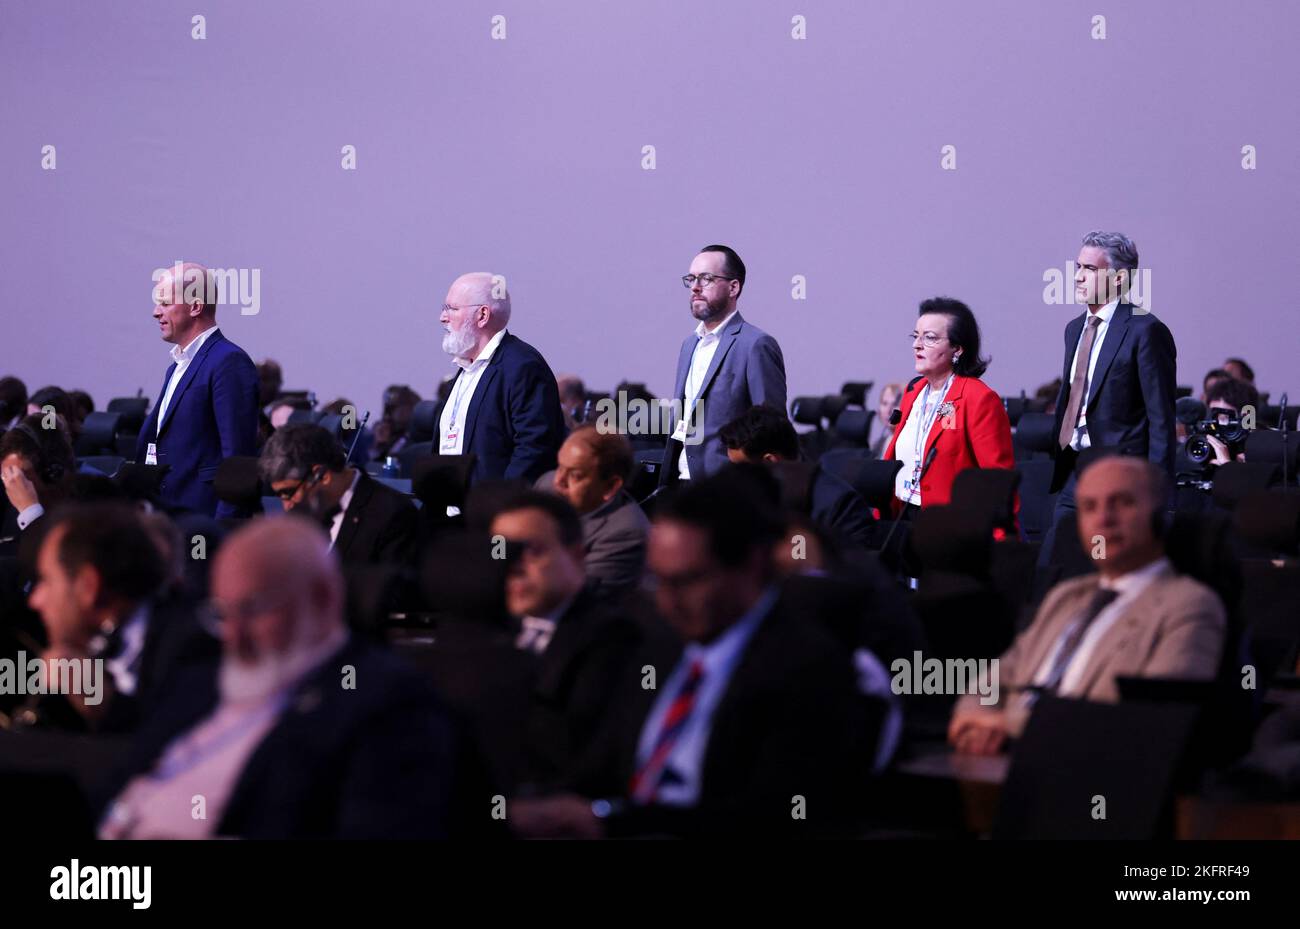 Los delegados asisten a la sesión plenaria de clausura de la cumbre climática COP27 en Sharm el-Sheikh, Egipto, el 20 de noviembre de 2022. REUTERS/Mohamed Abd El Ghany Foto de stock